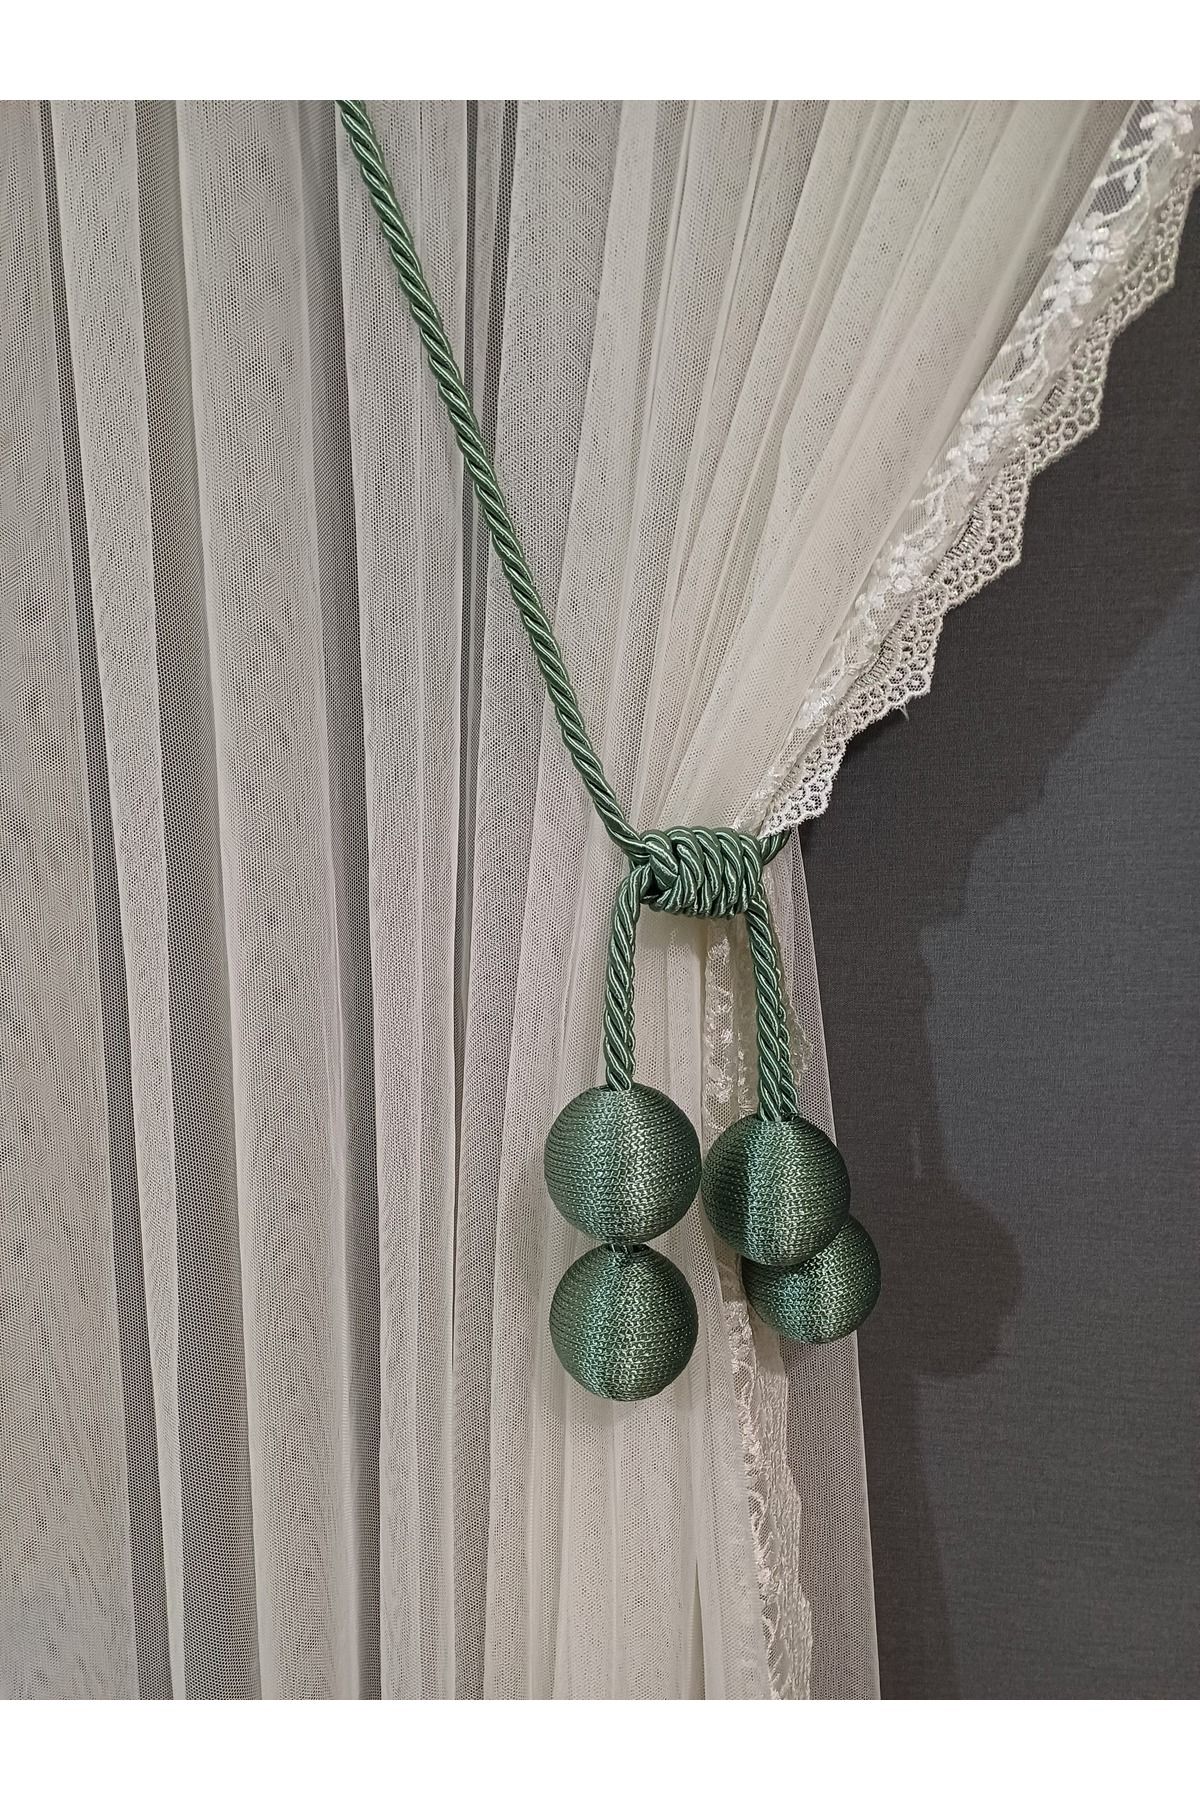 venedik home Mint Yeşil Renk 4 Toplu Tül Ve Fon Bağlama Aparatı Kruvaze Tavan Bağlama Korniş Takmatik